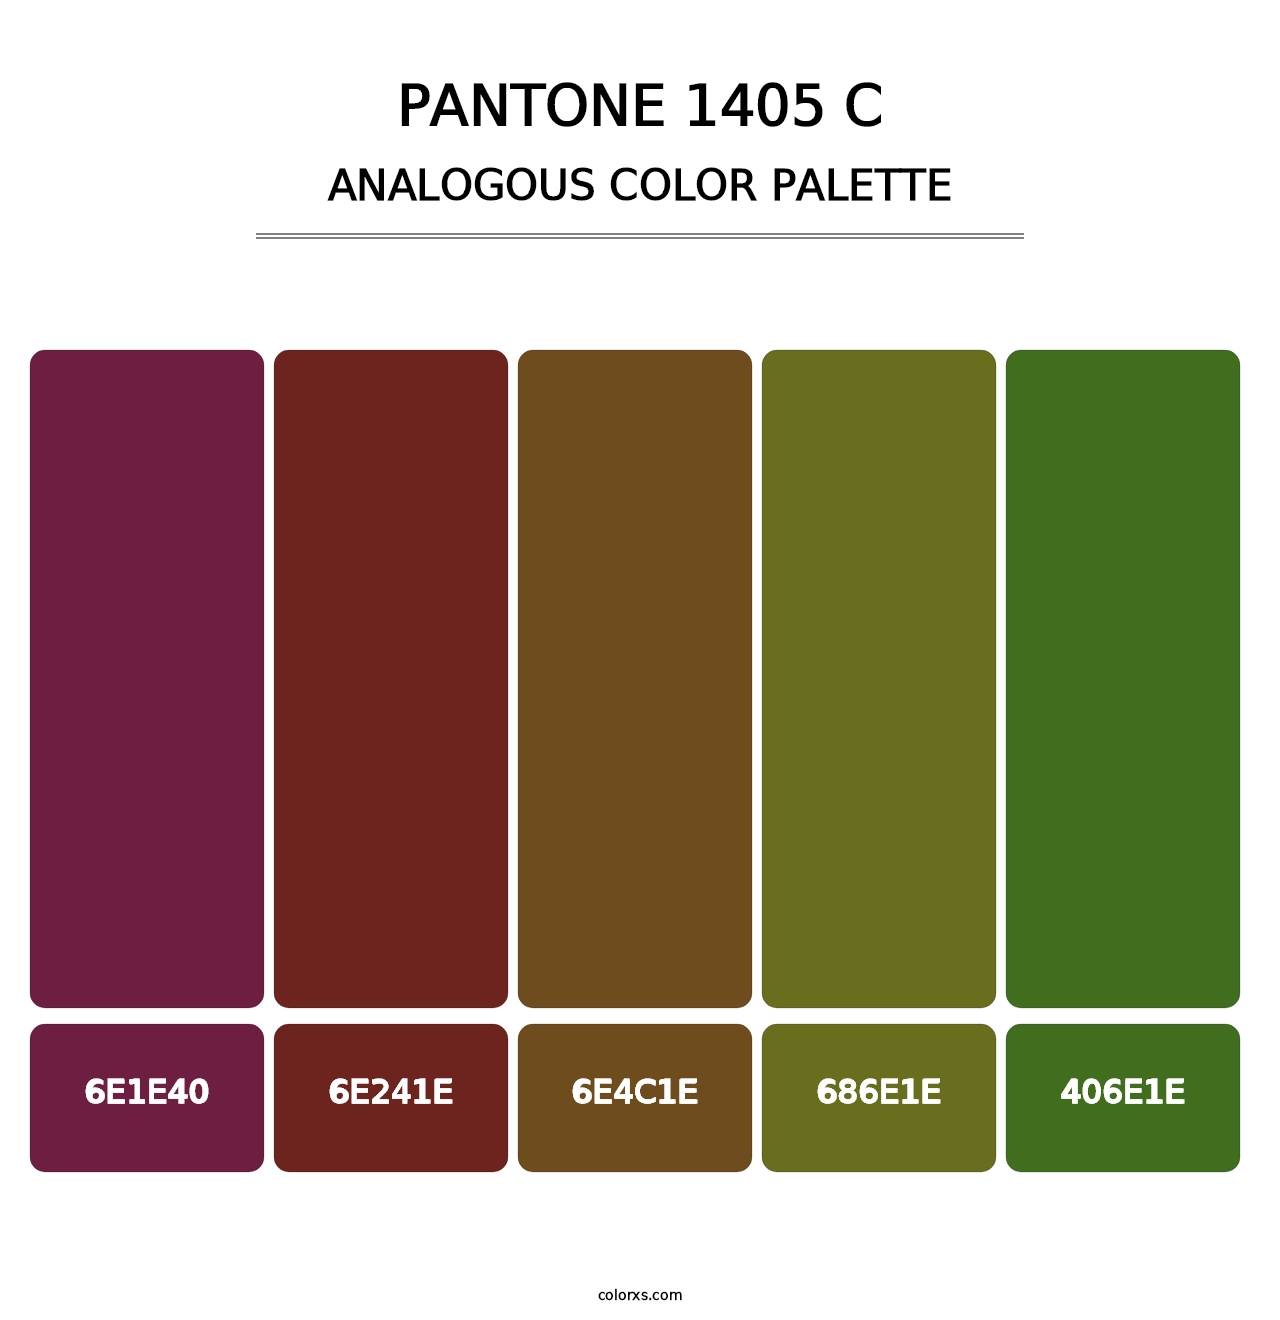 PANTONE 1405 C - Analogous Color Palette